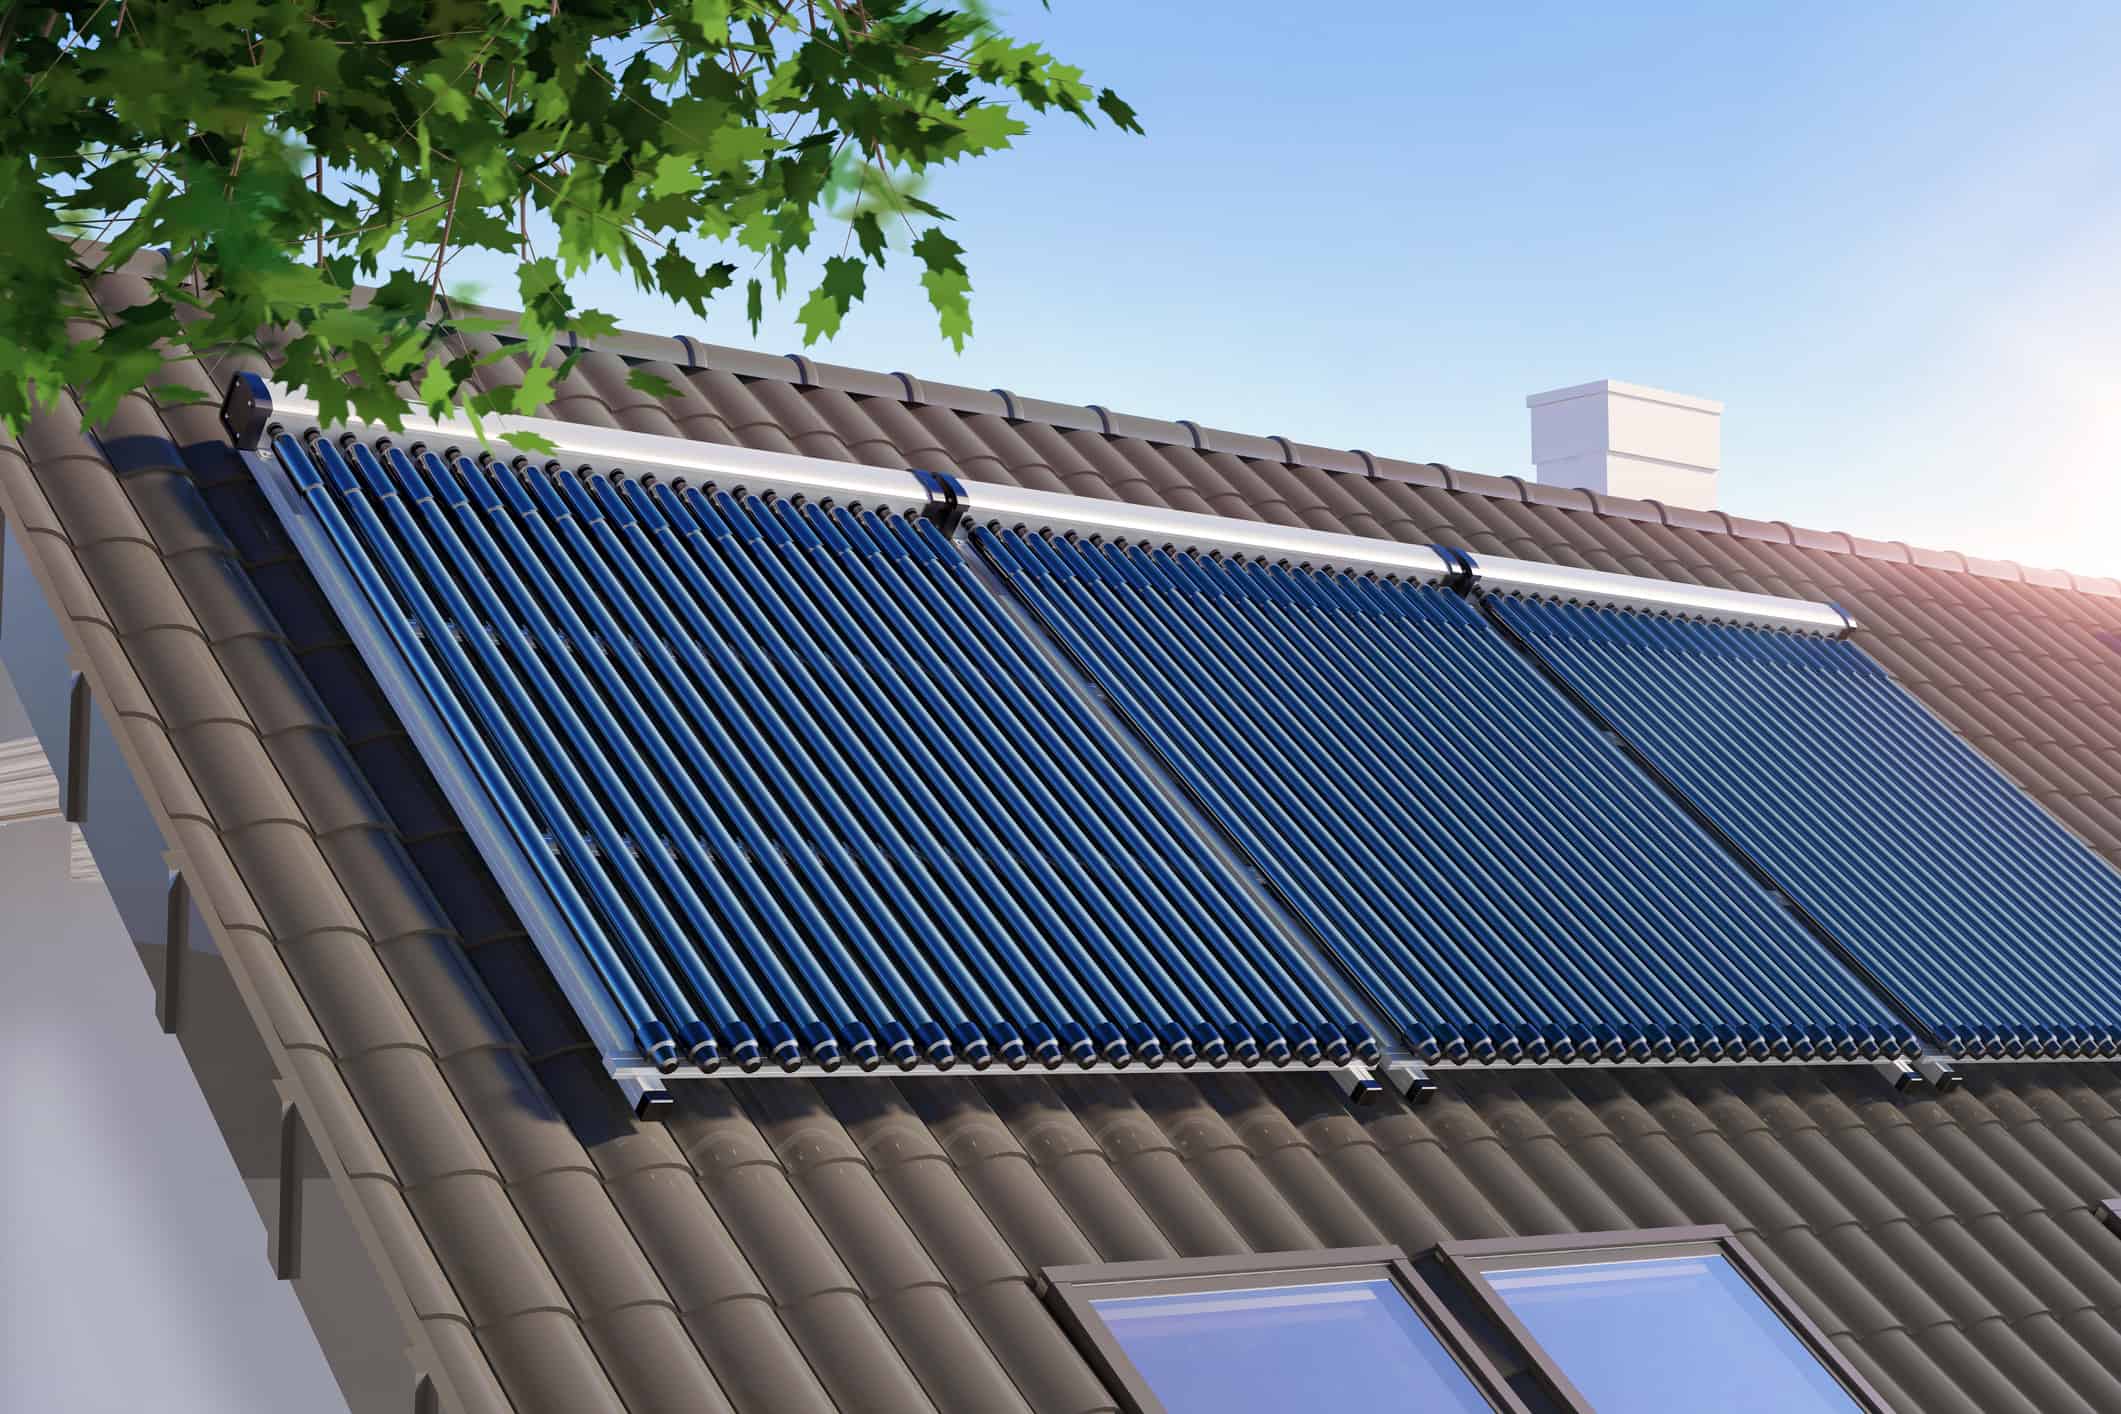 Comment chauffer sa maison grâce aux panneaux solaires ?